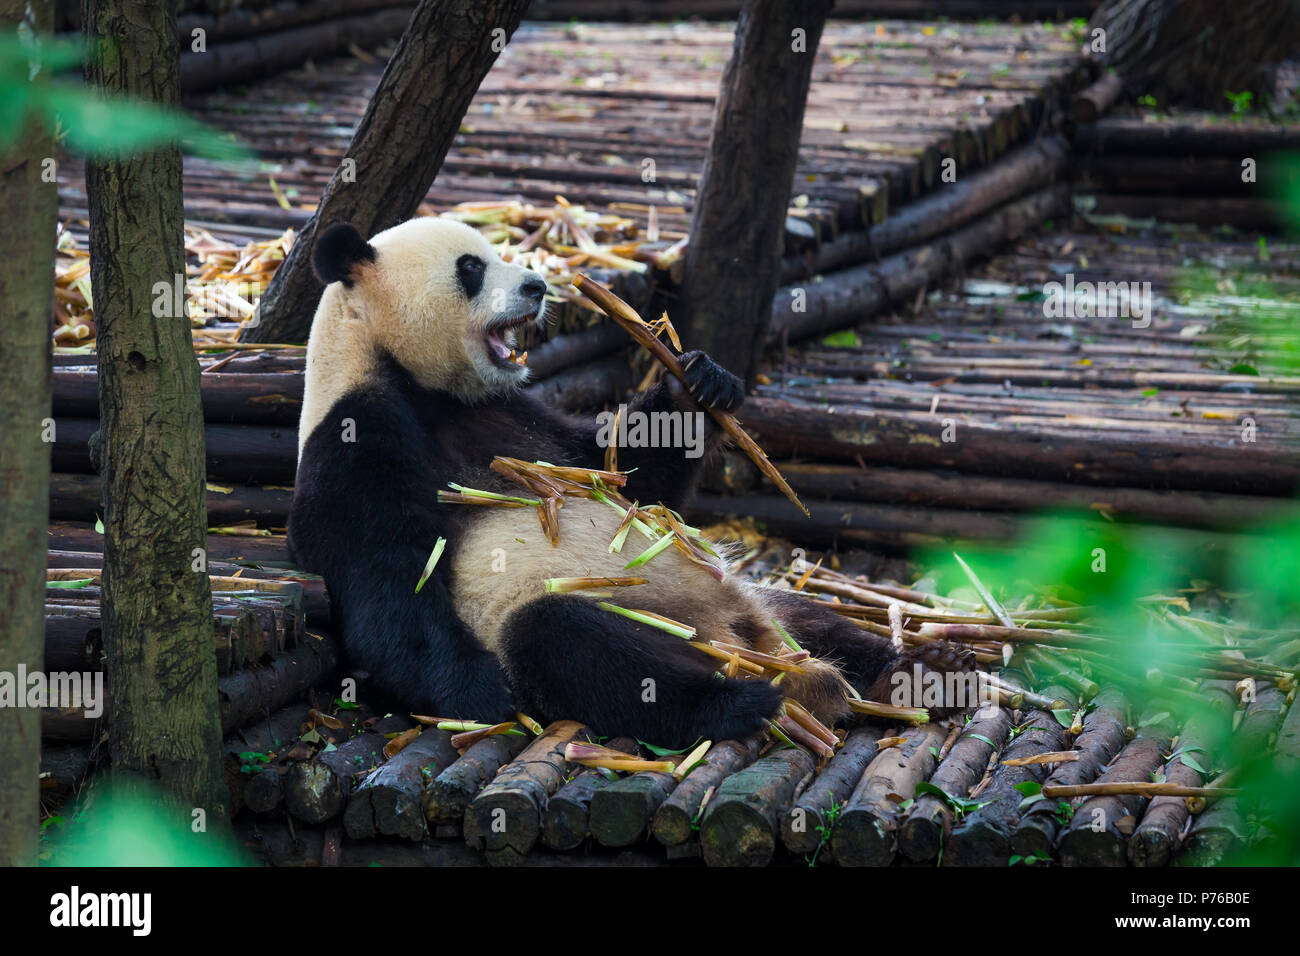 Panda gigante di mangiare il bambù sdraiato su legno a Chengdu nella provincia di Sichuan, in Cina Foto Stock